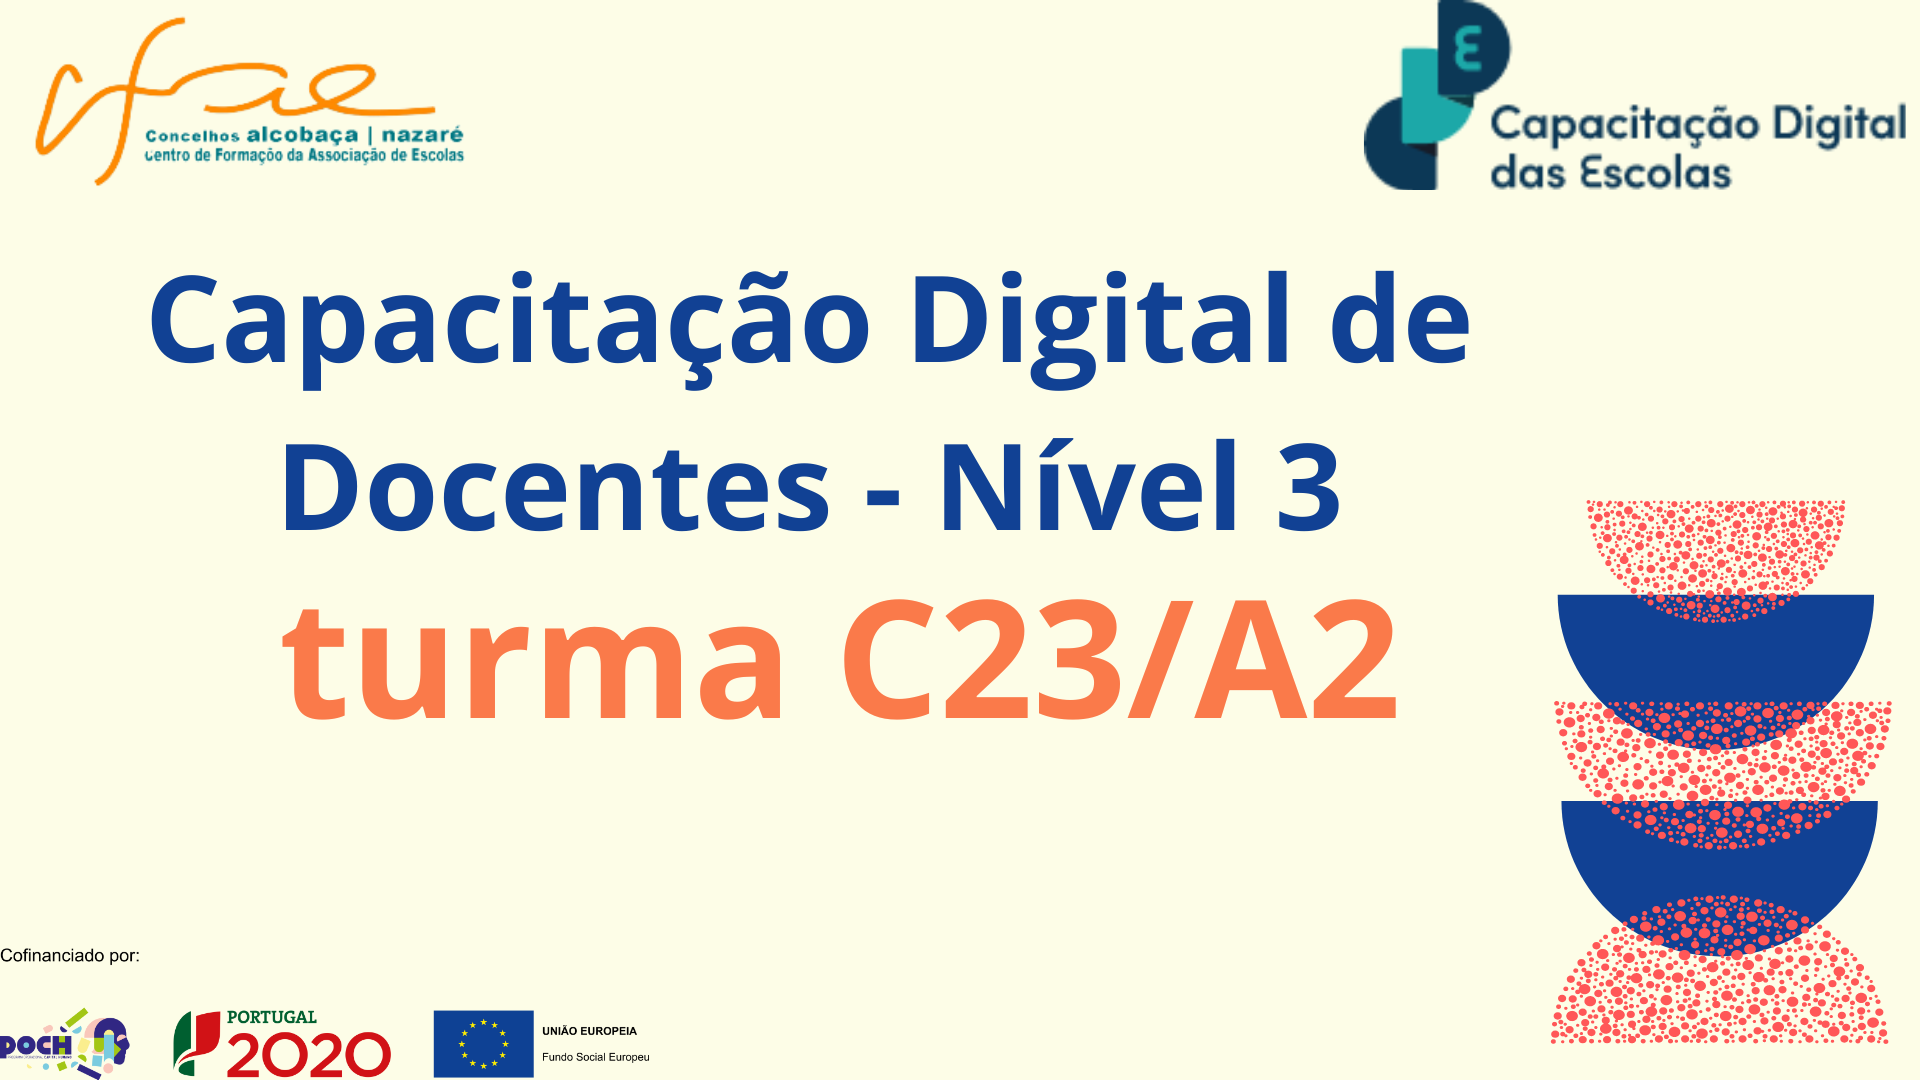 Capacitação Digital de Docentes - Nível 3 - Turma C23/A2